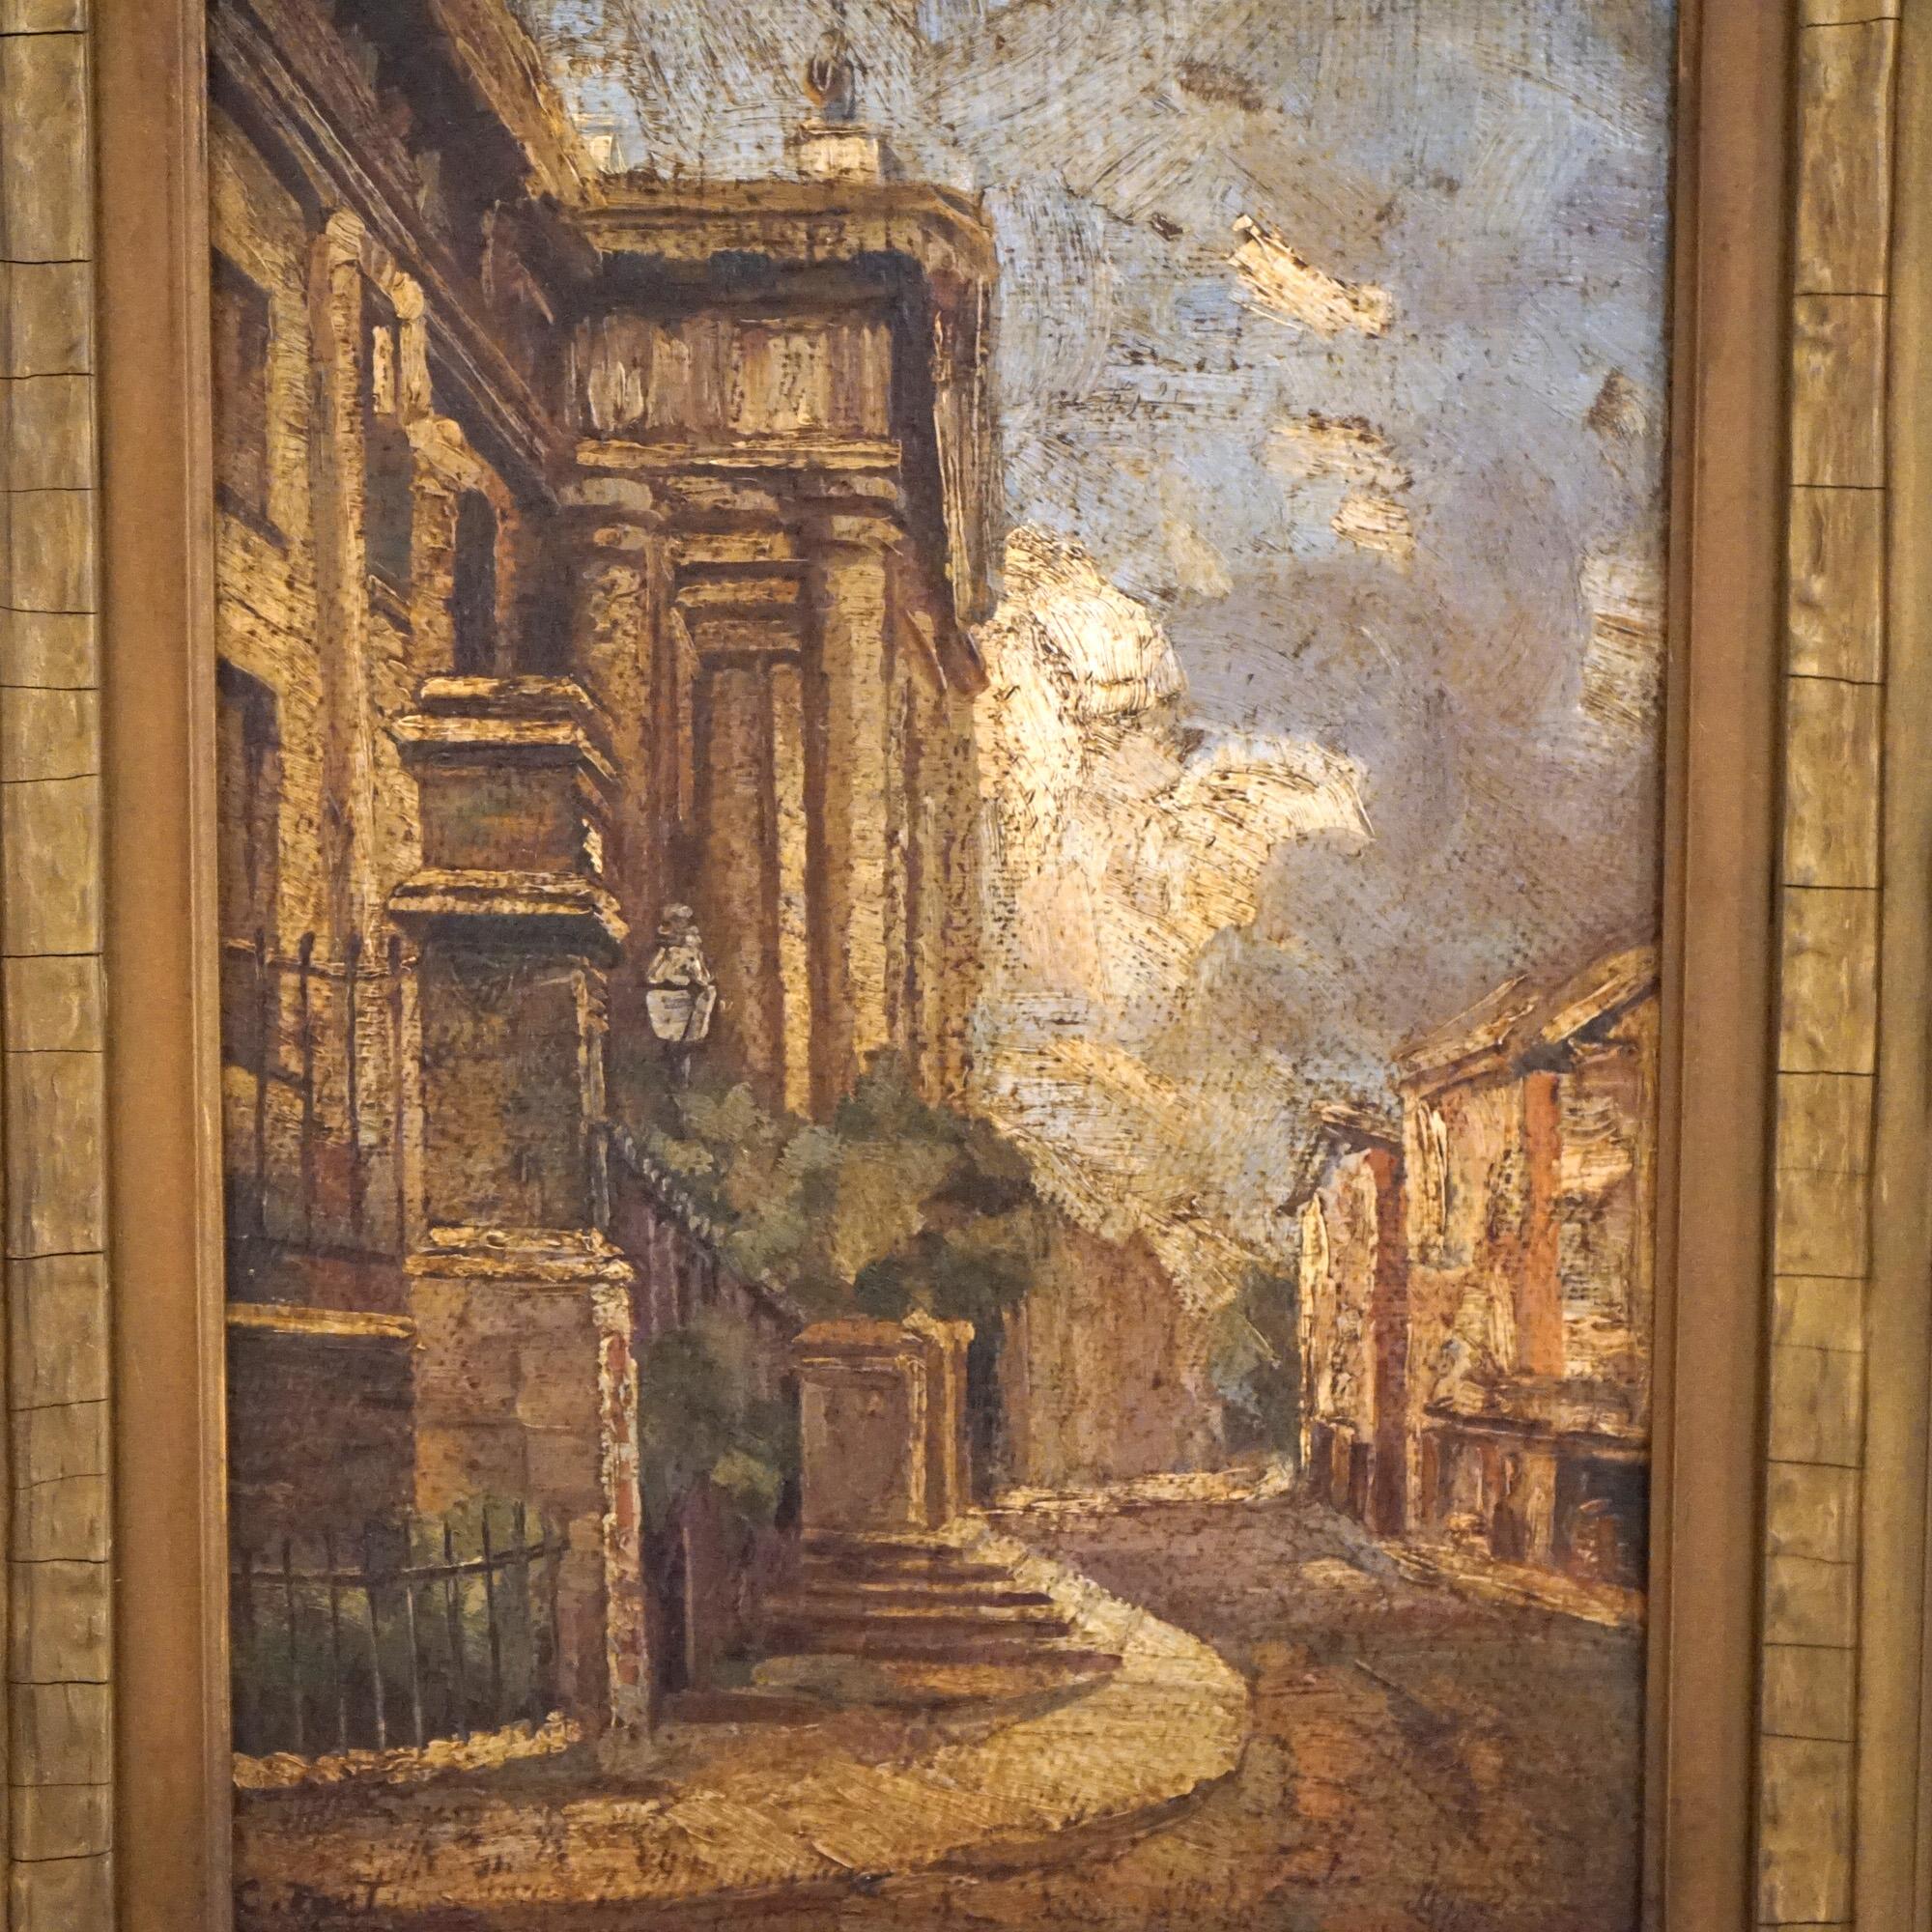 Un tableau ancien offre une peinture impressionniste à l'huile sur panneau d'une scène de rue italienne avec des structures et une route sinueuse, artiste signé illisible, c1900.

Mesures- 22,5''H x 18,5''L x 3''P ; 10'' x 14,25'' vue